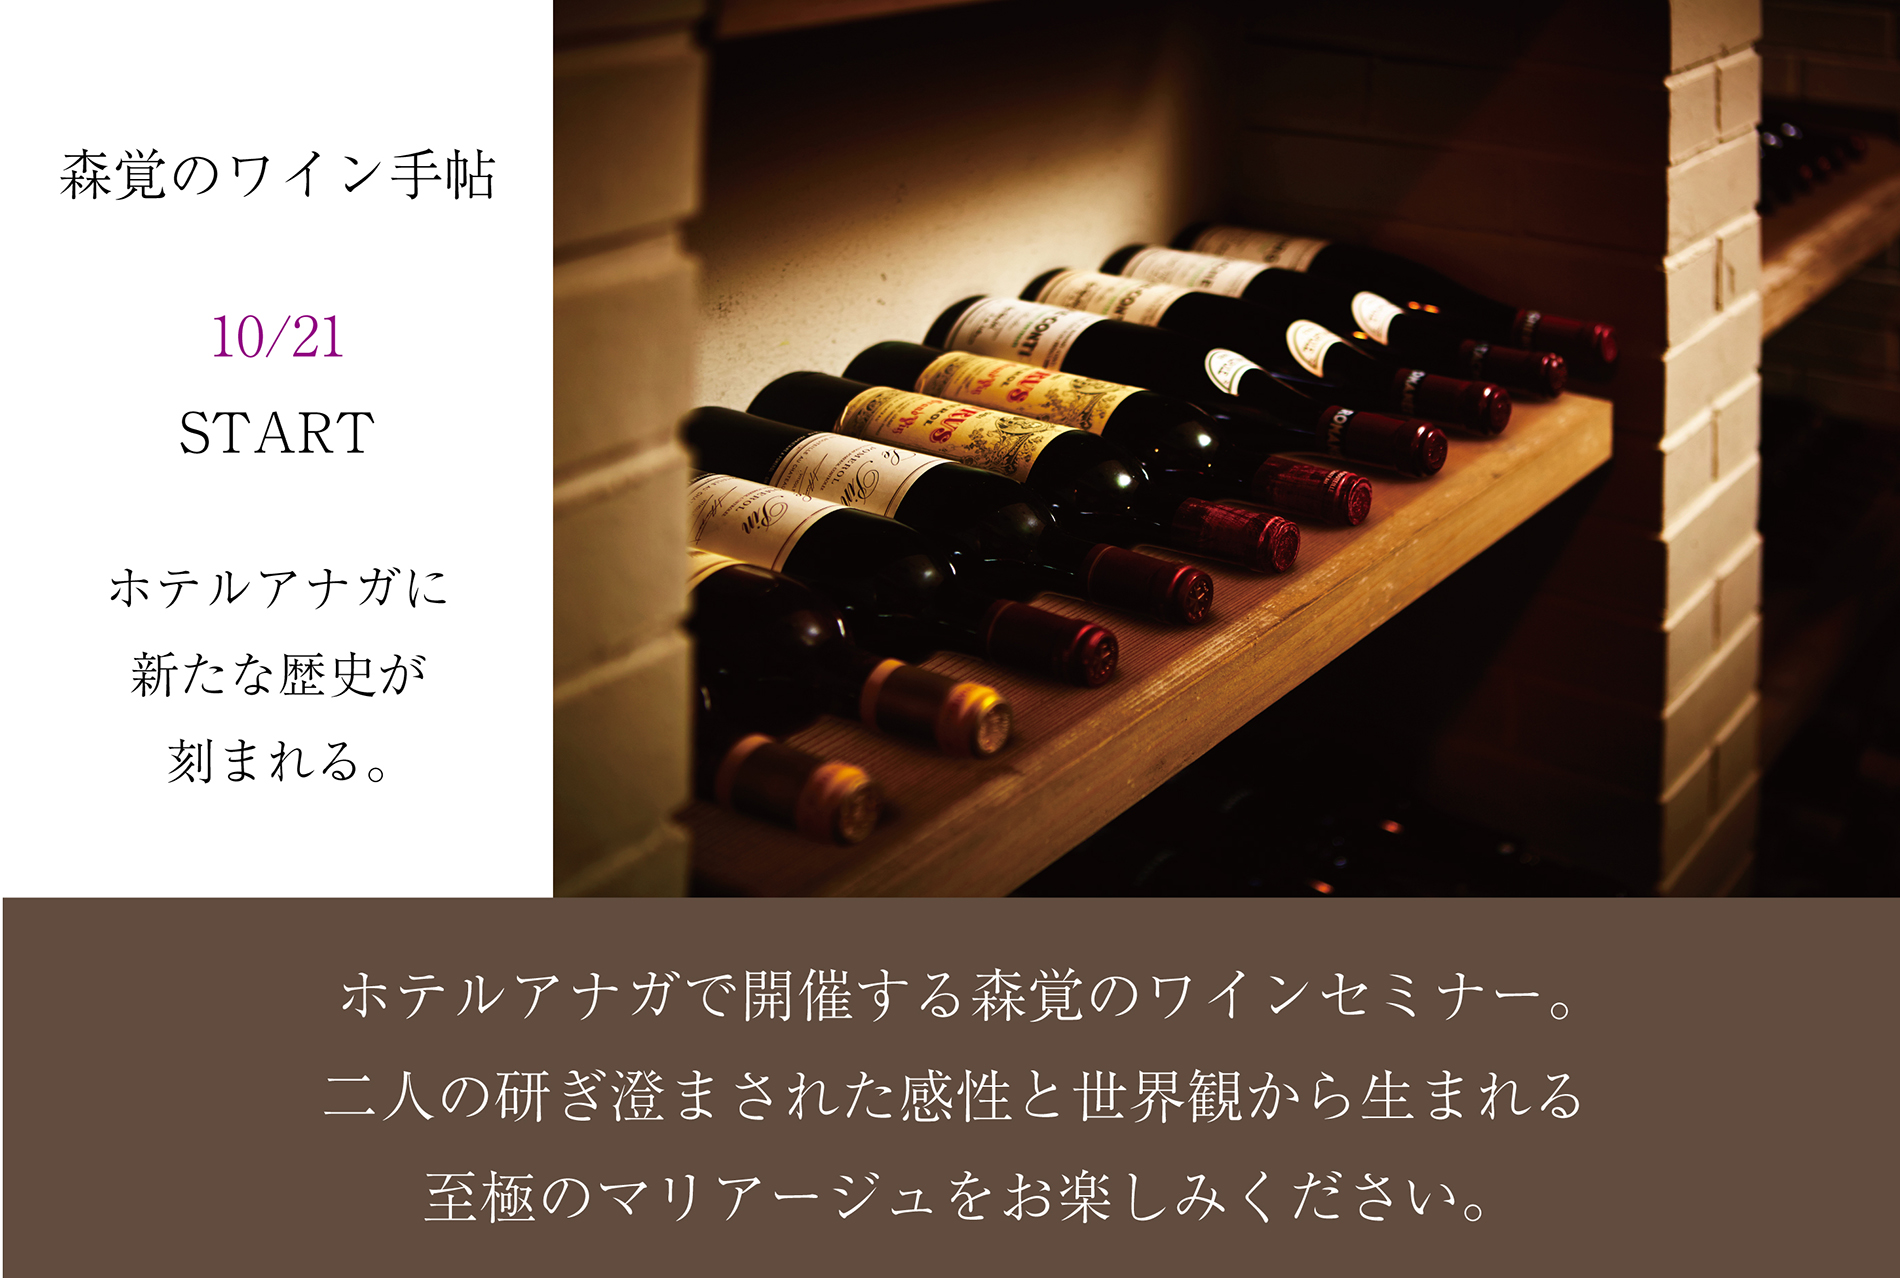 森覚のワインセミナーがスタート「森覚のワイン手帖」